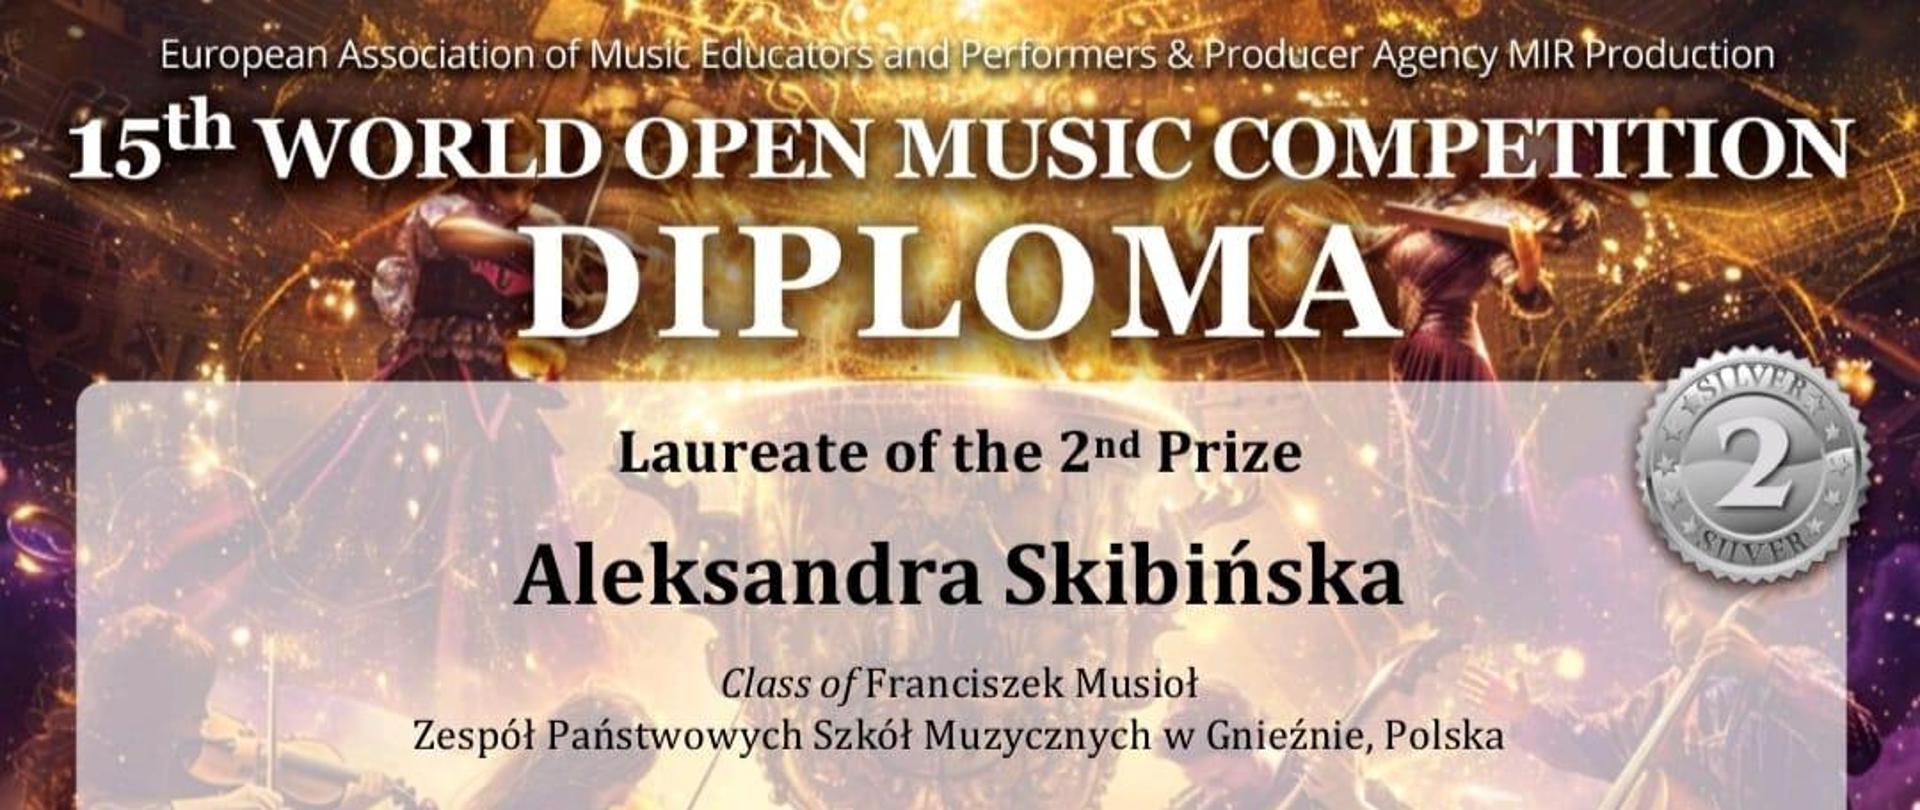 Dyplom dla Aleksandry Skibińskiej za zajęcie II miejsca w XV Międzynarodowym Konkursie Muzycznym w Belgradzie